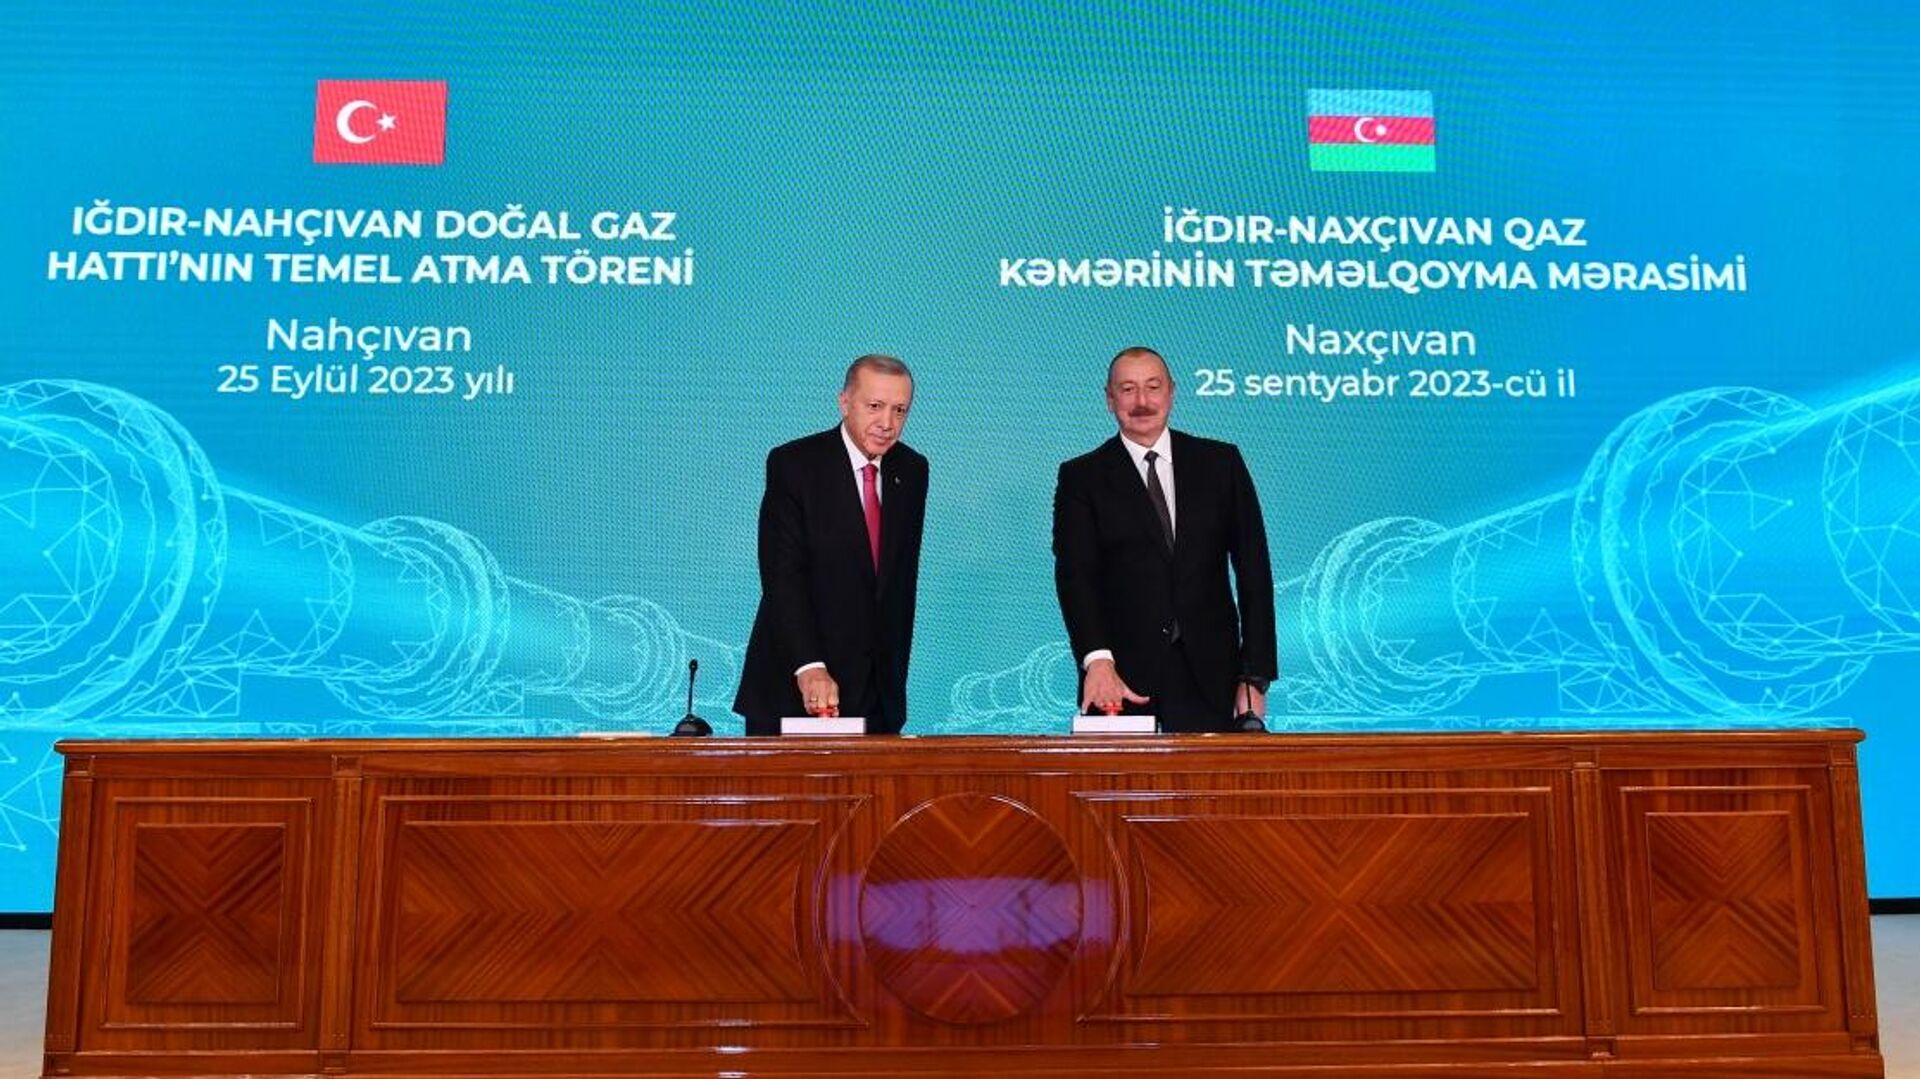 Президент Ильхам Алиев и Президент Реджеп Тайип Эрдоган приняли участие в церемонии закладки фундамента газопровода Игдыр-Нахчыван  - Sputnik Азербайджан, 1920, 25.09.2023